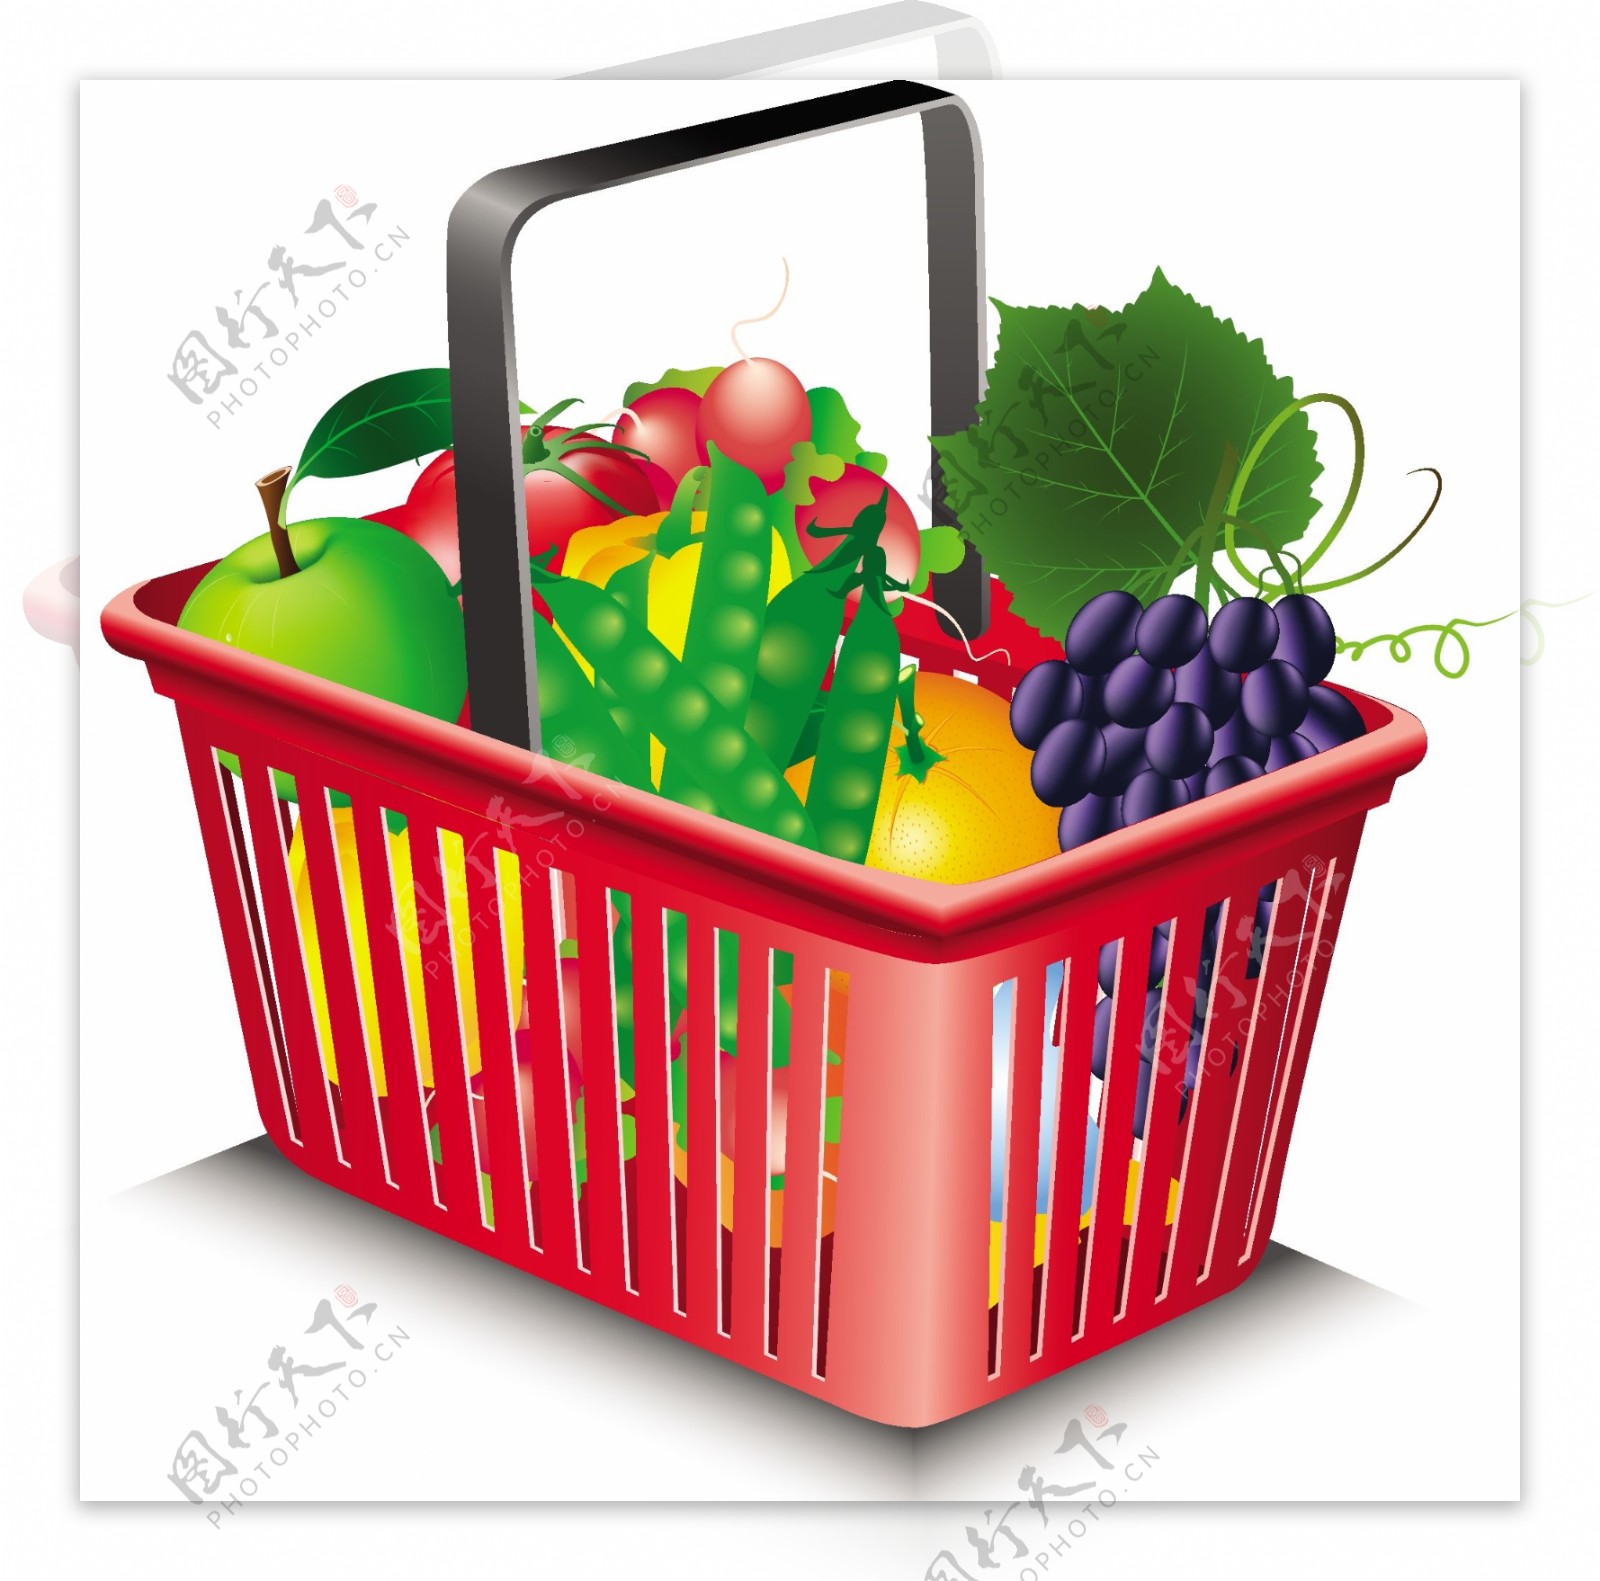 水果和蔬菜和购物篮02矢量